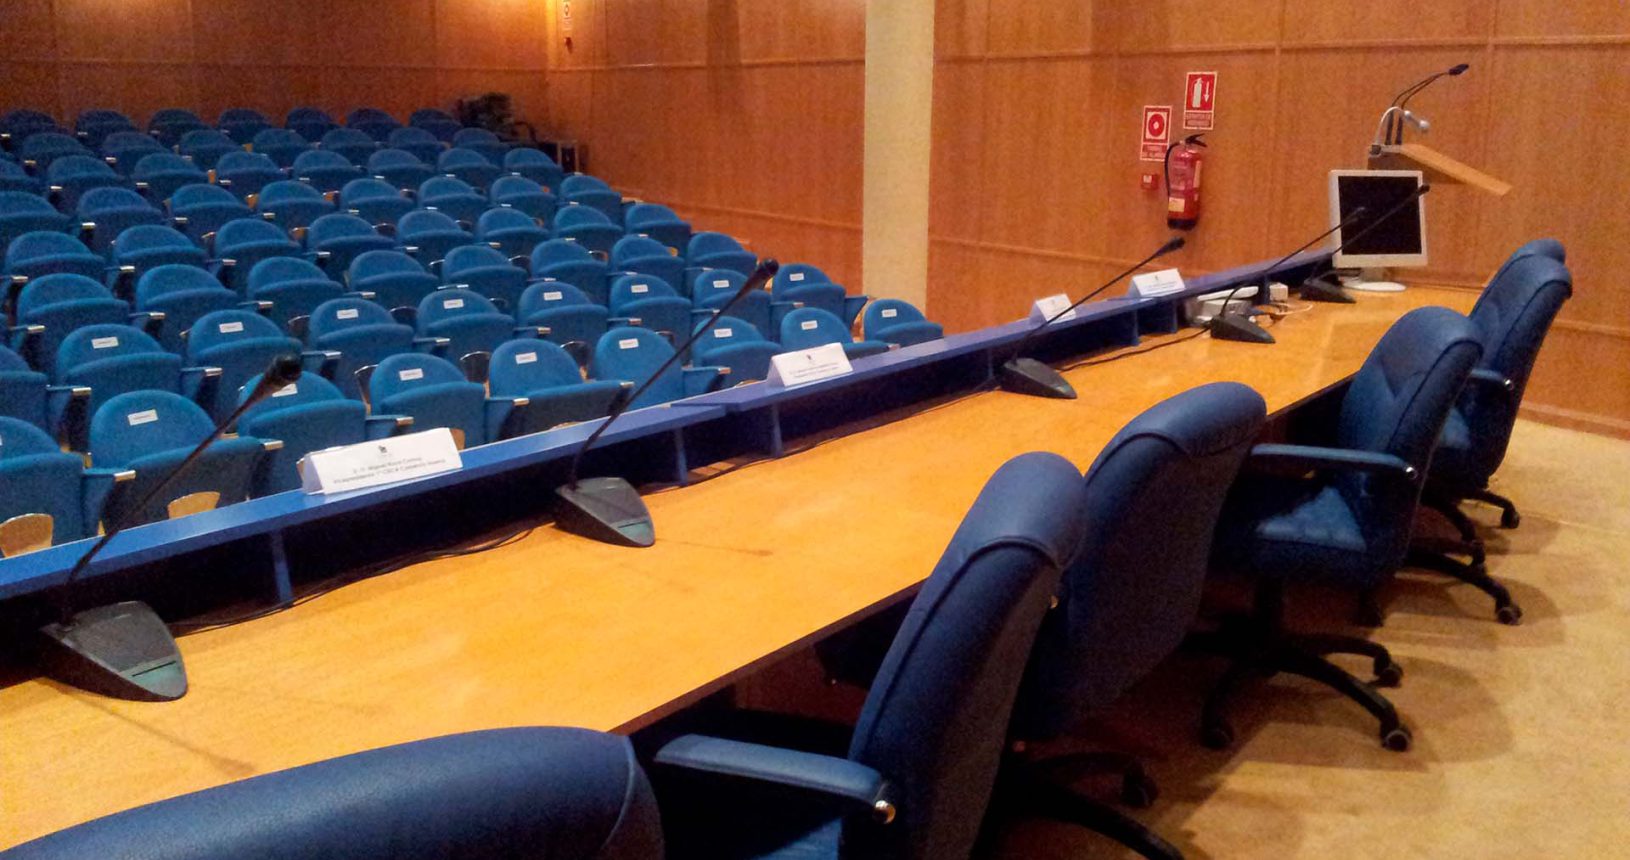 Salón de actos para eventos empresariales en Huelva